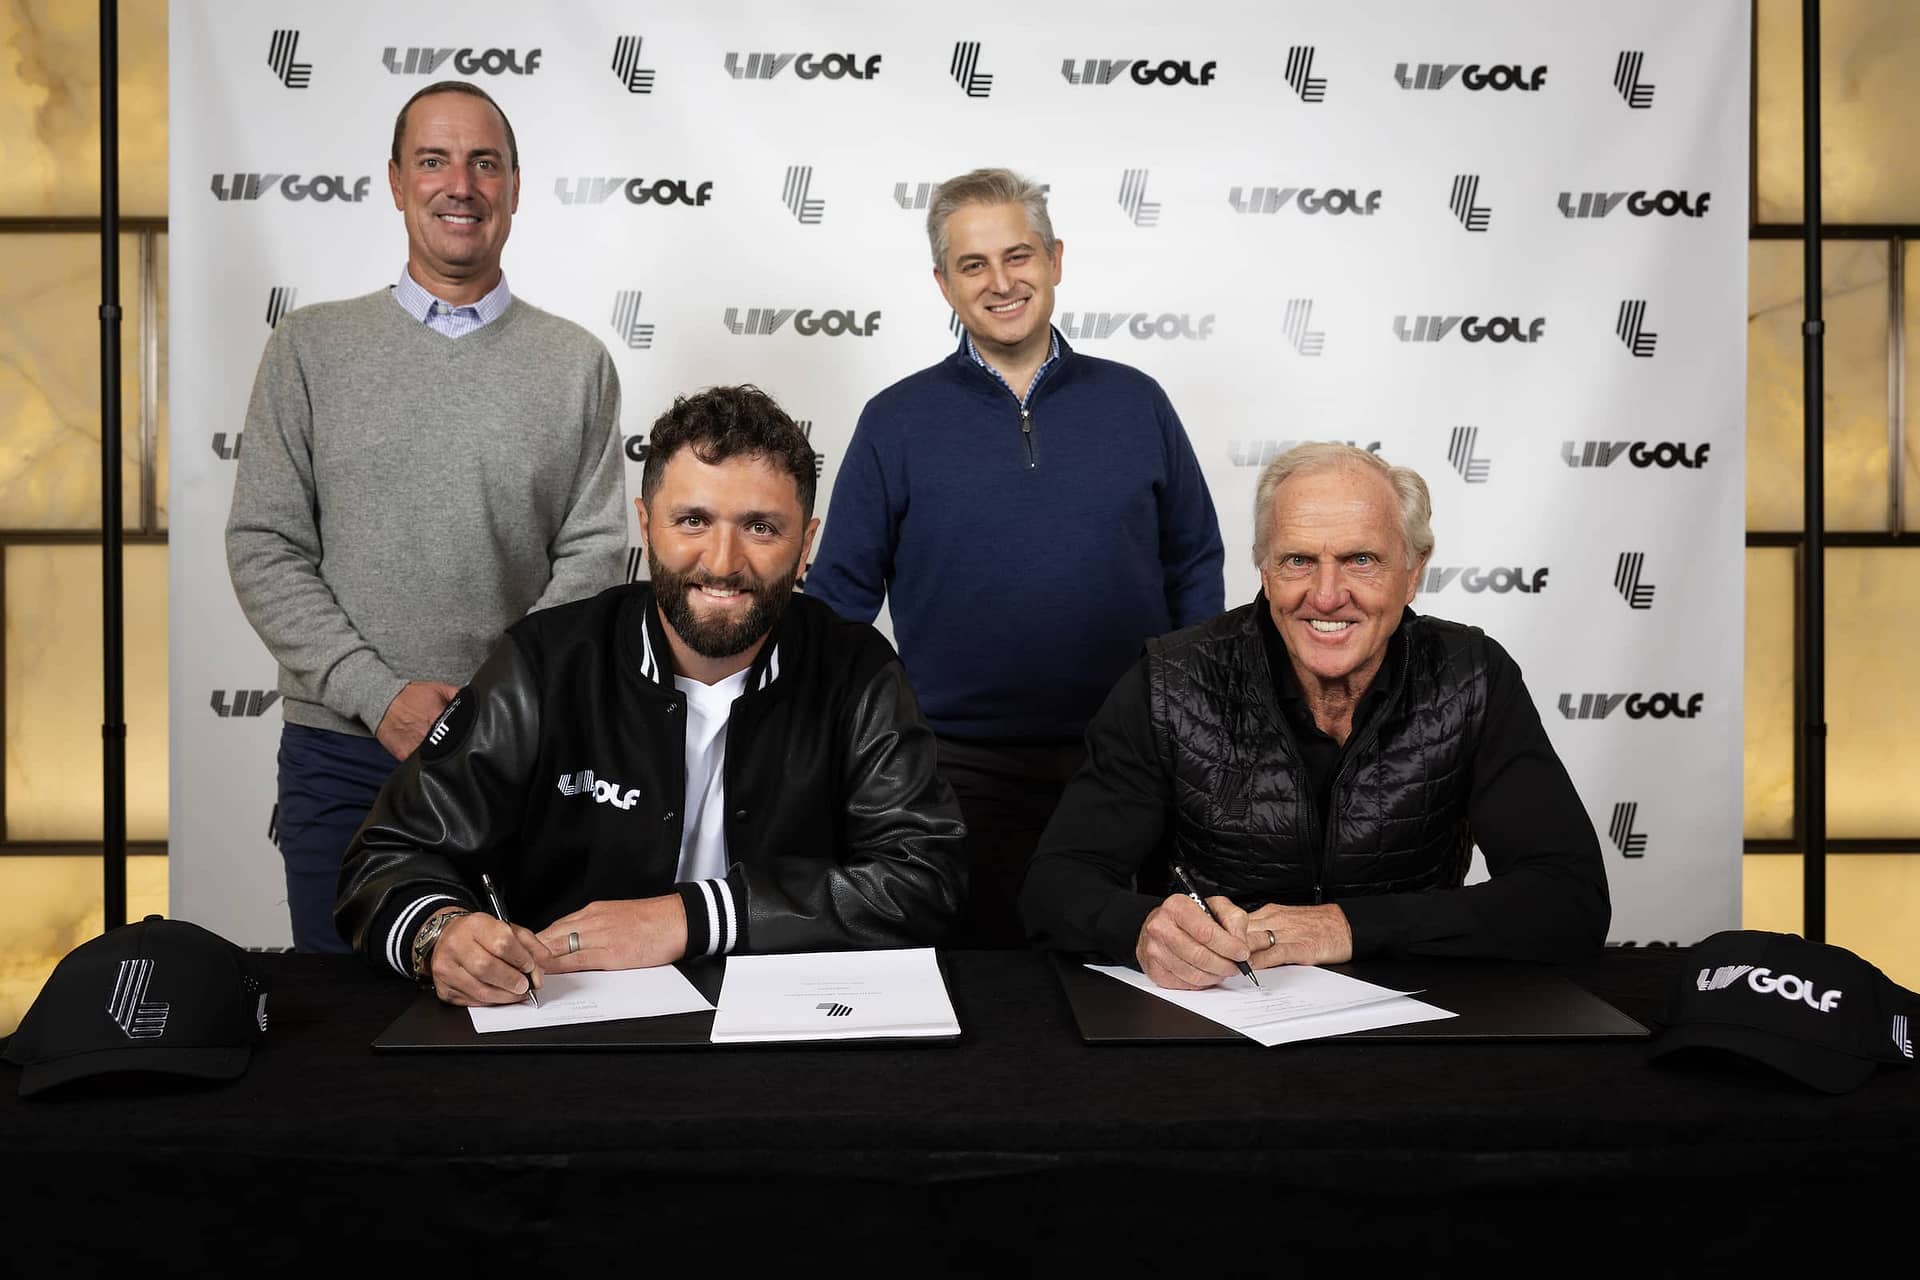 Two-time major winner Jon Rahm joins LIV Golf